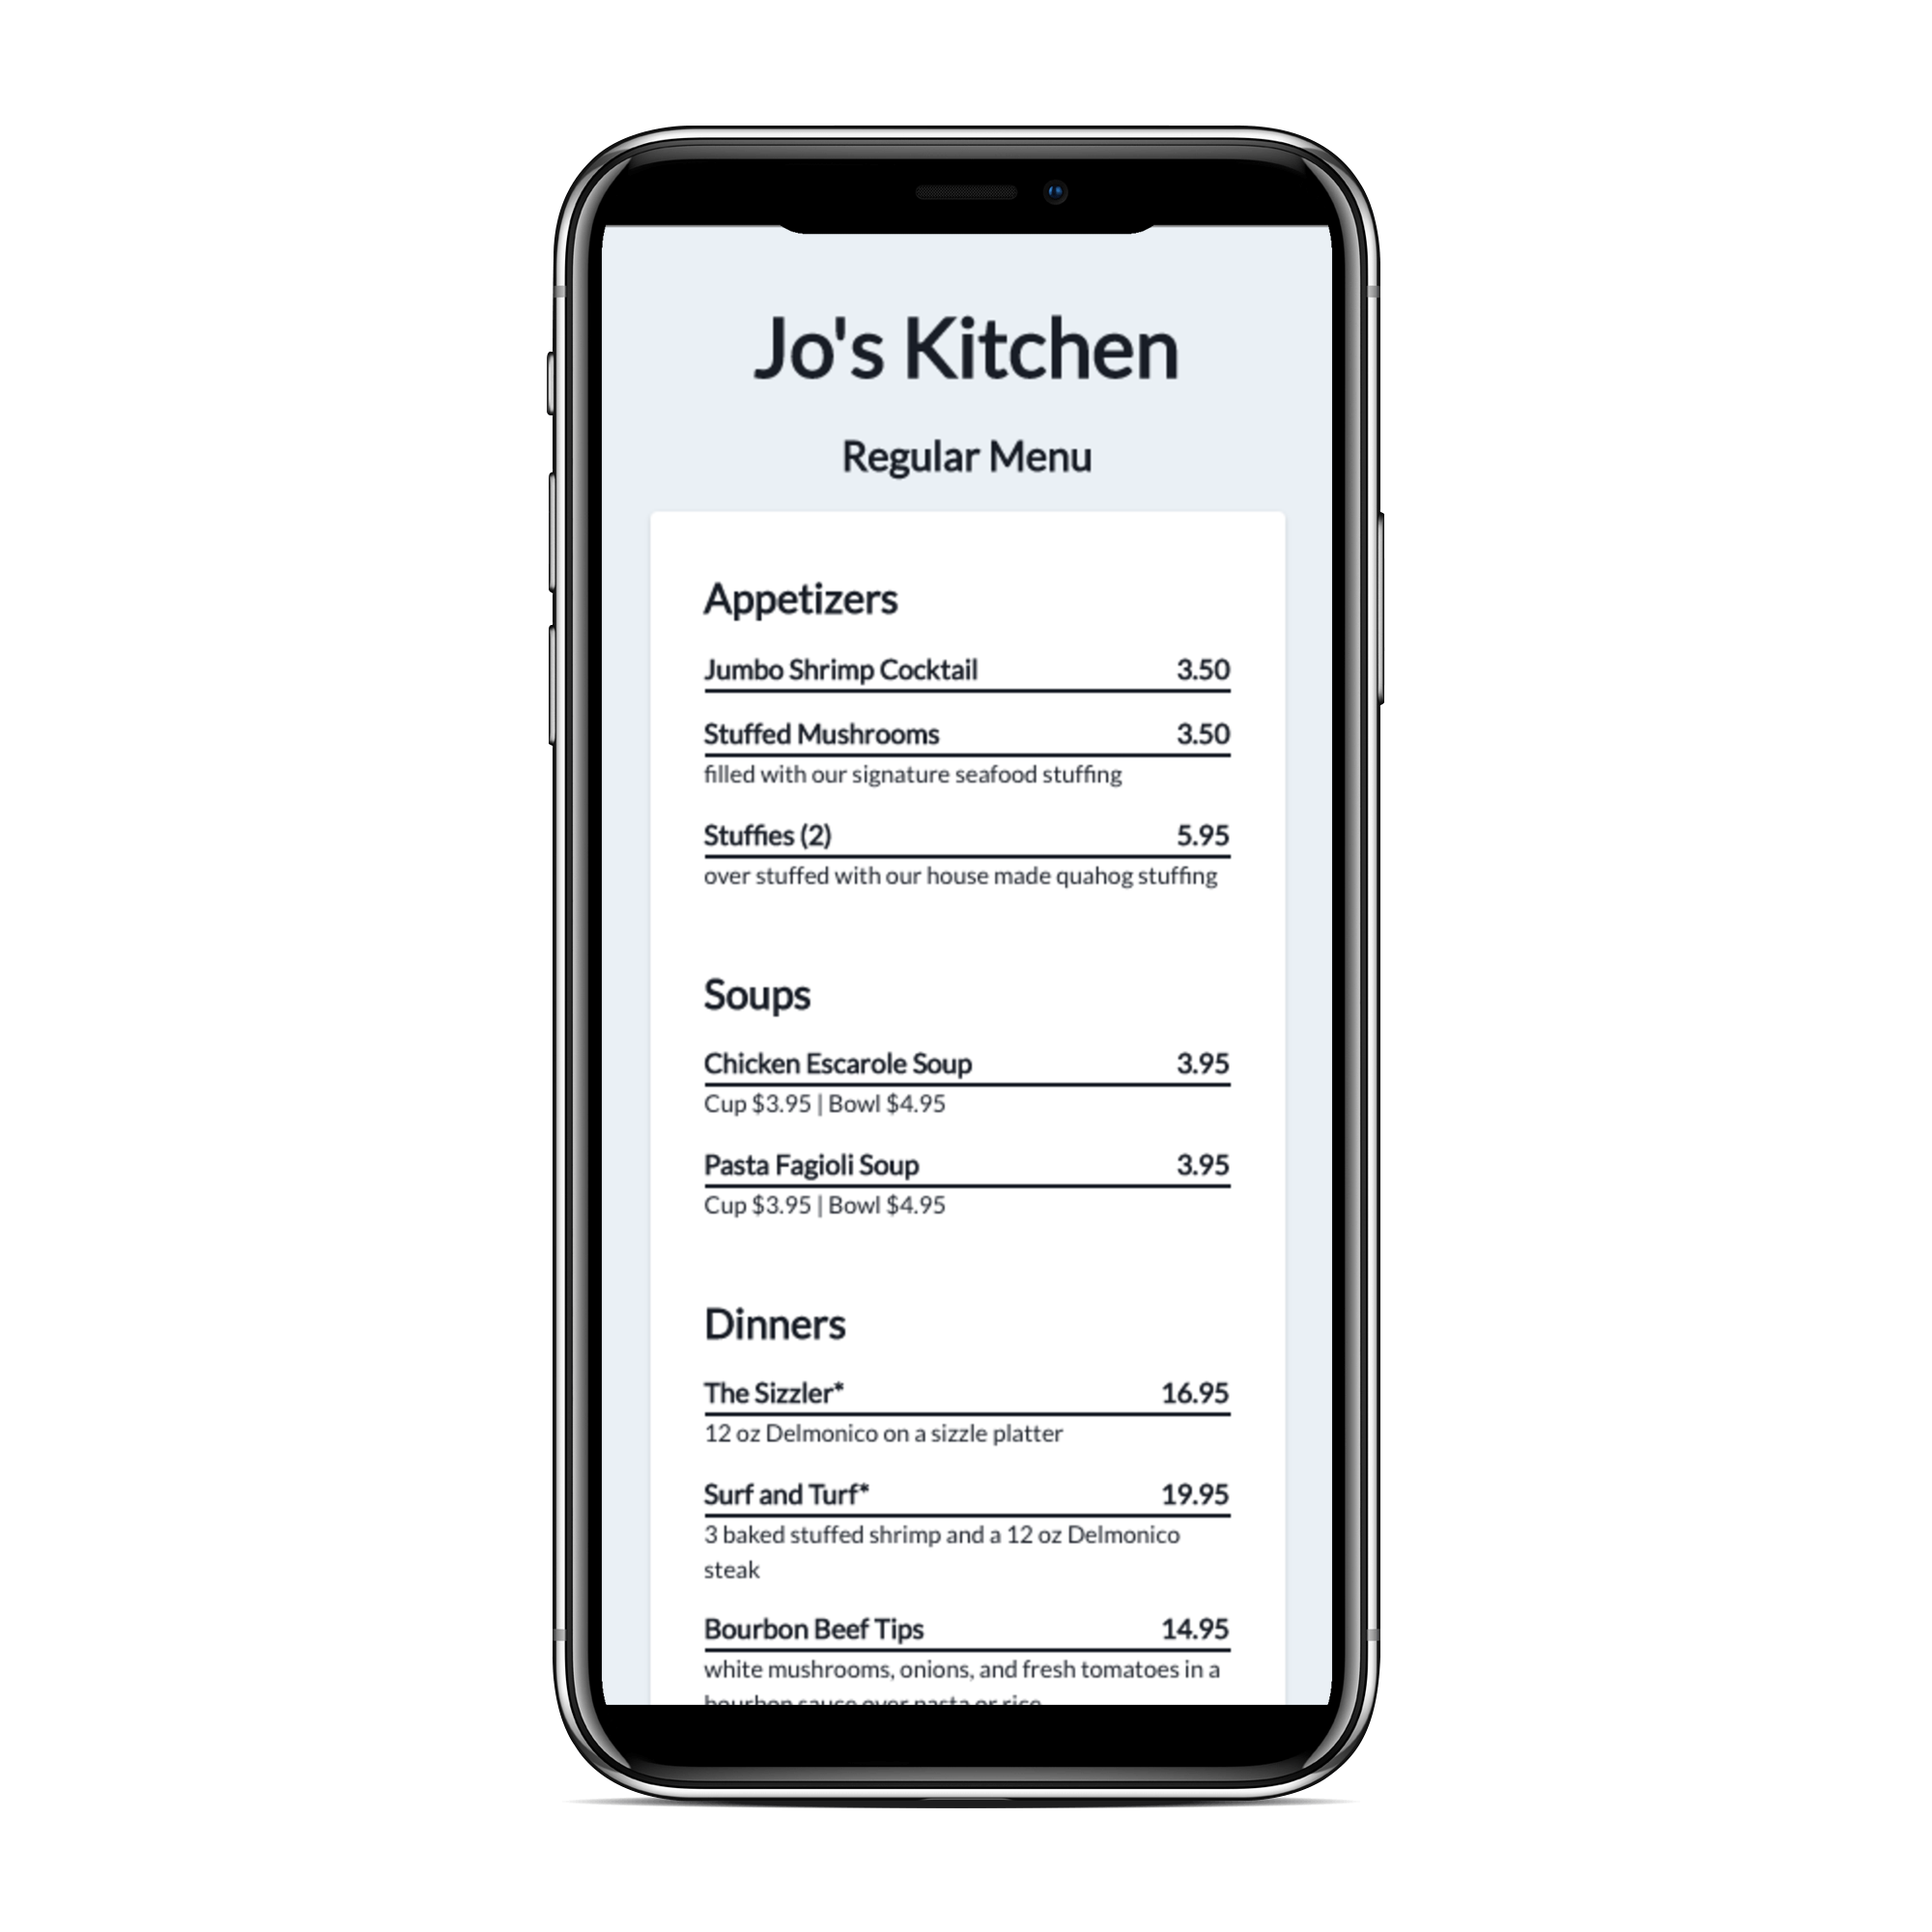 Online menu displayed on a mobile phone